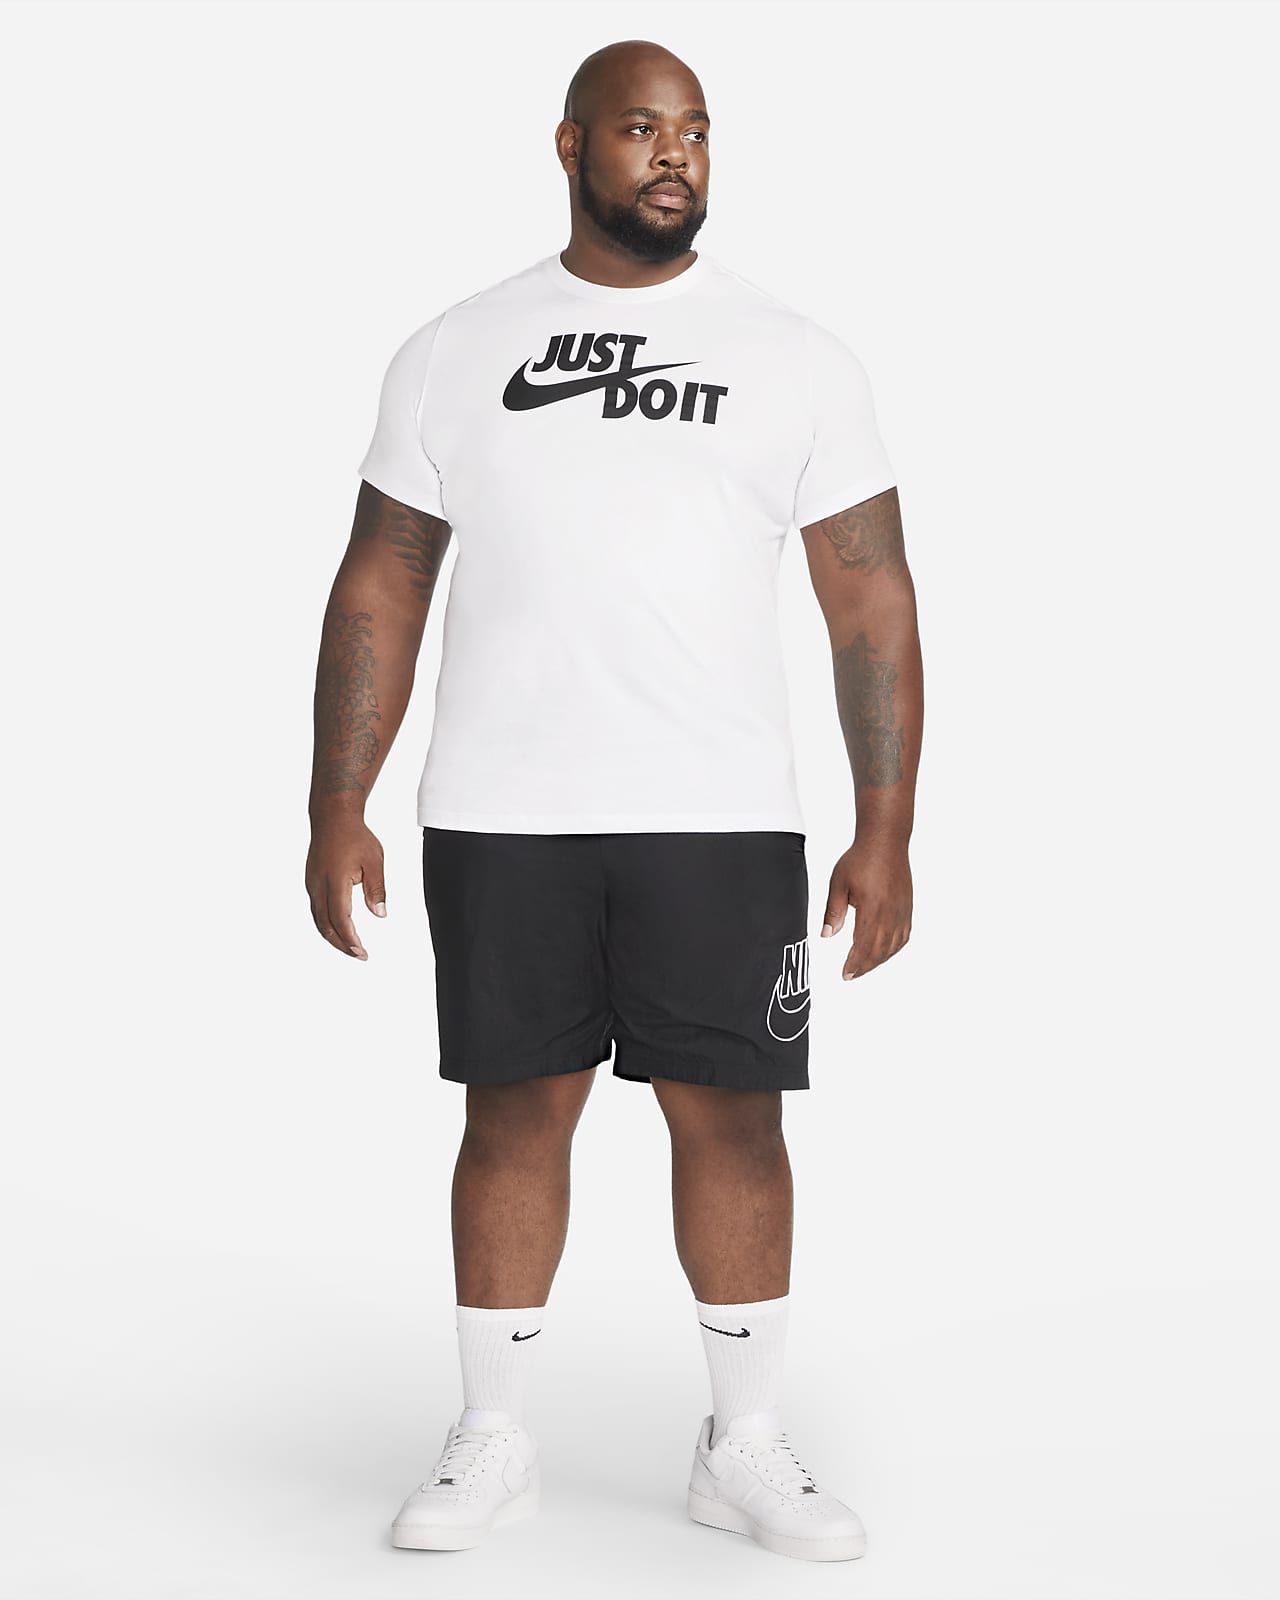 Nike Sportswear Men's T-Shirt. Nike LU